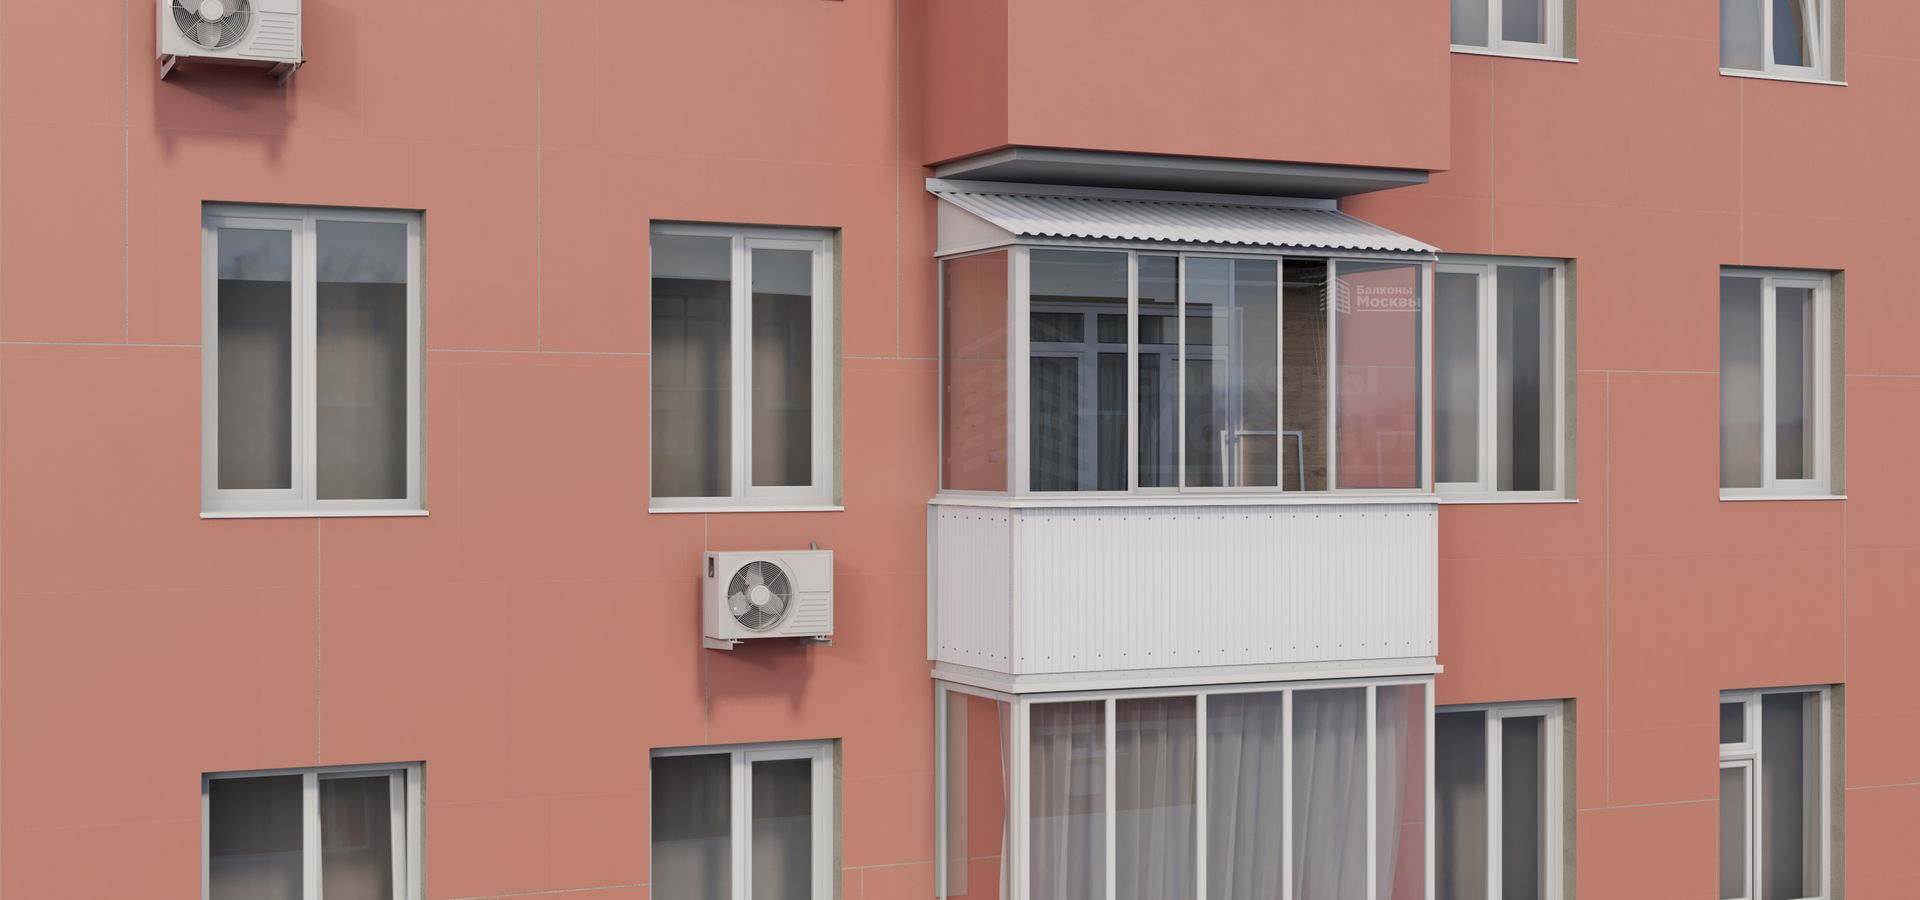 Заказать остекление, отделку и утепление балконов и лоджий в различных ЖК СПб